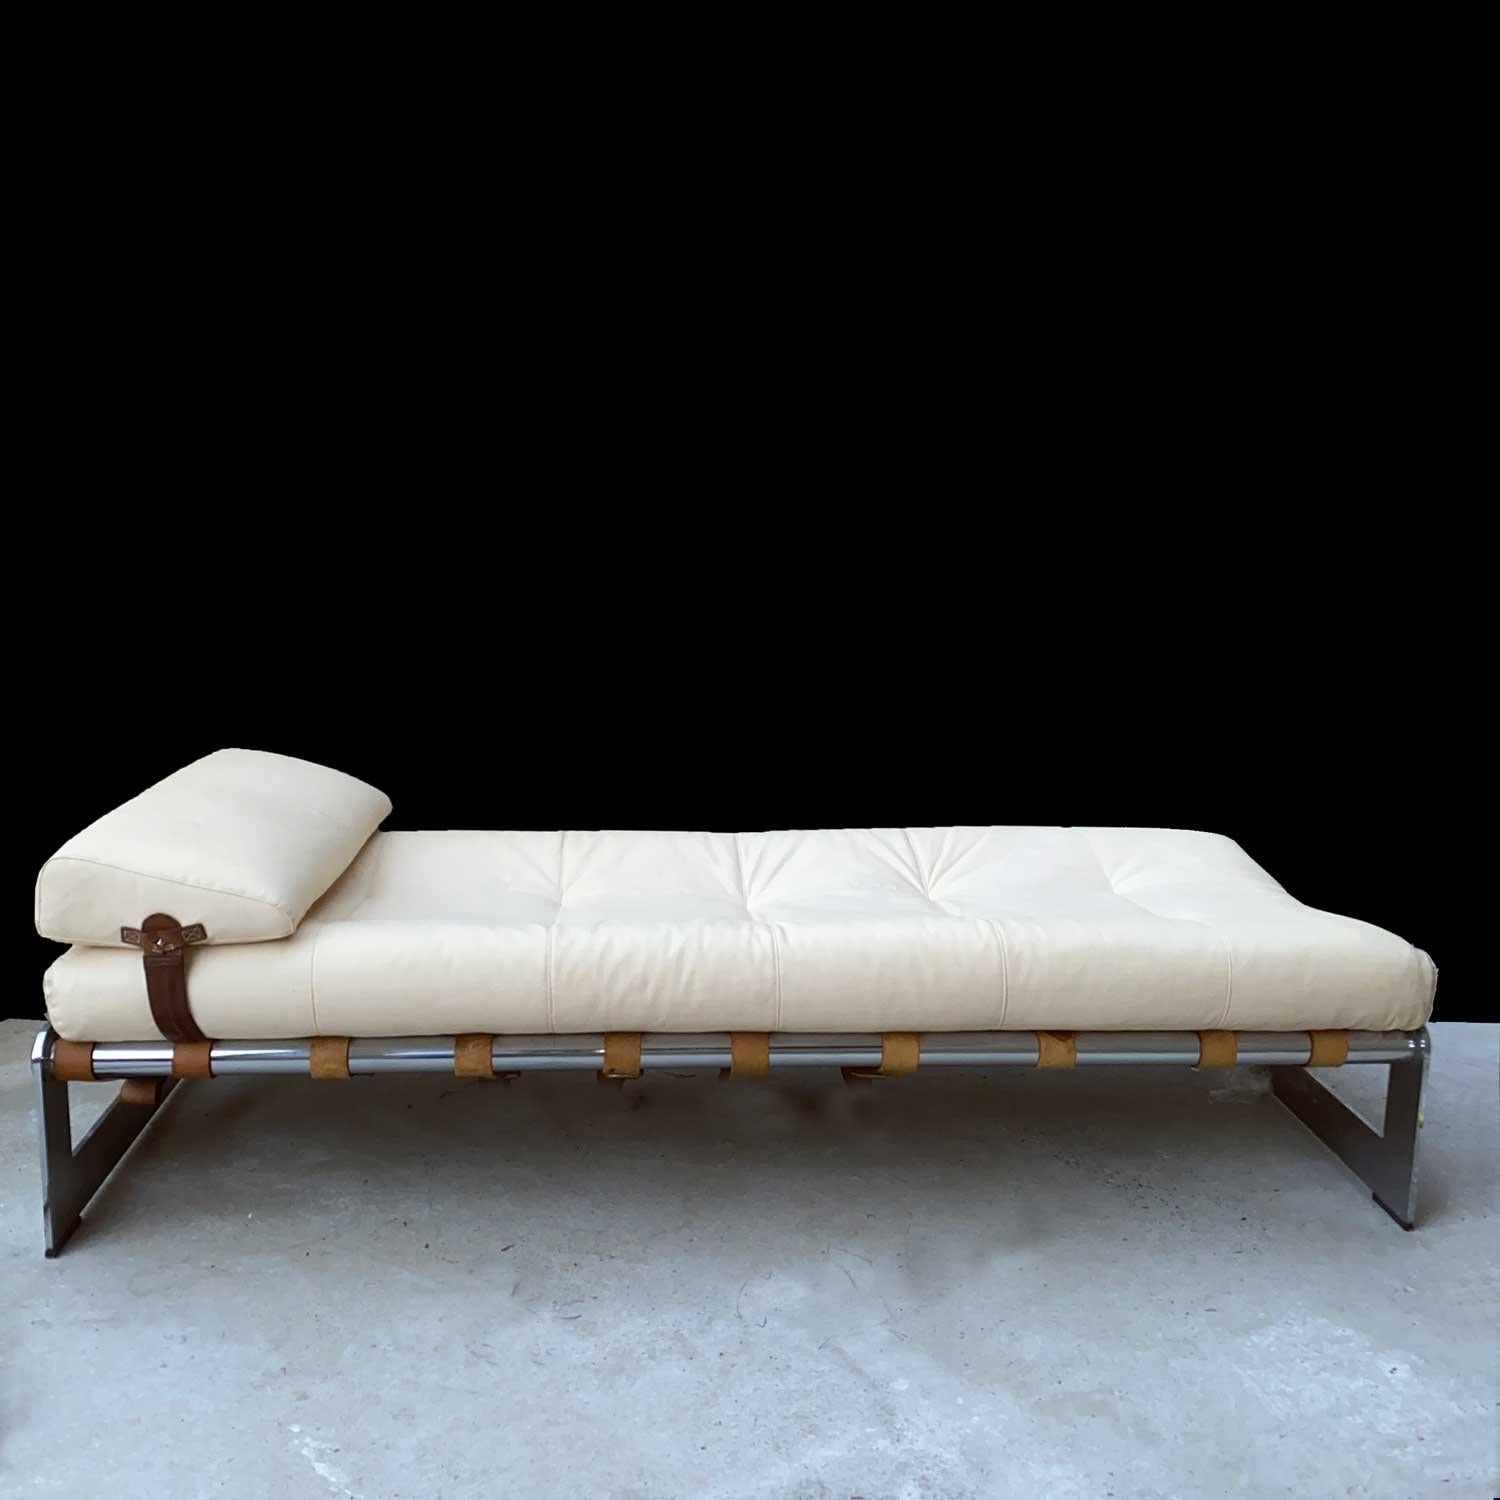 Gilles Bouchez ( 1930)
, berühmter französischer Architekt, hat eine limitierte Serie von Möbeln mit einer Struktur aus Chromstahl und Lederriemen entworfen. Dies ist die Chaiselongue oder das Tagesbett, das seltenste Objekt dieser Produktion.